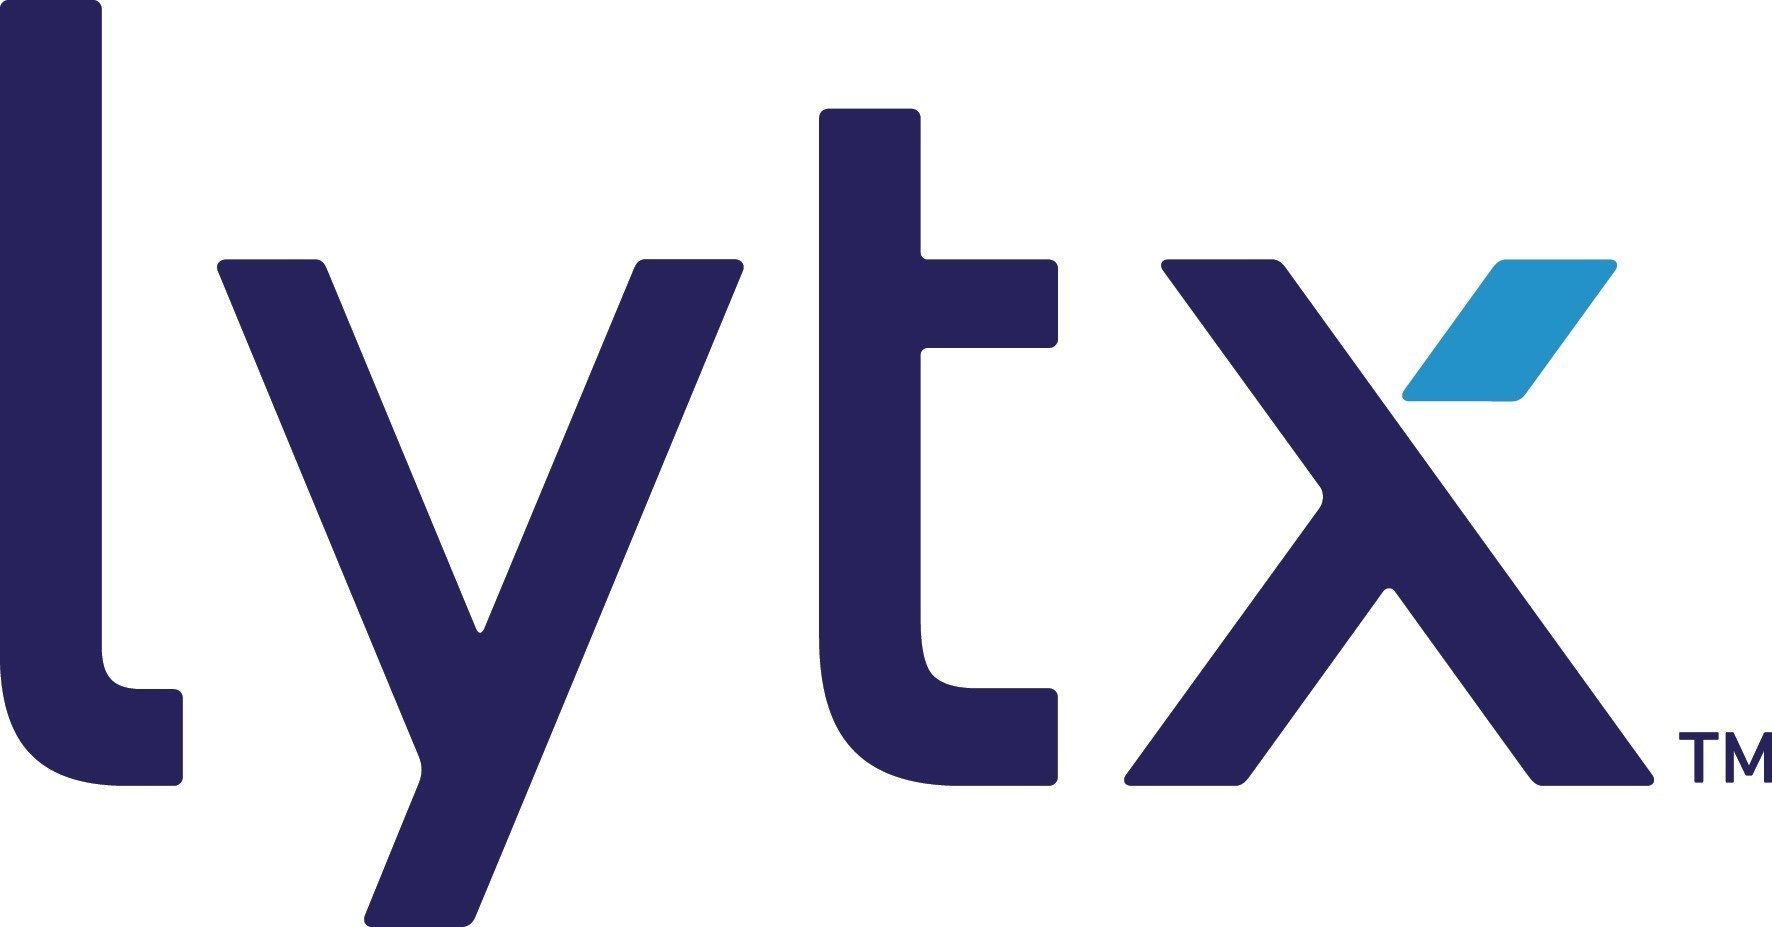 Lytx Inc